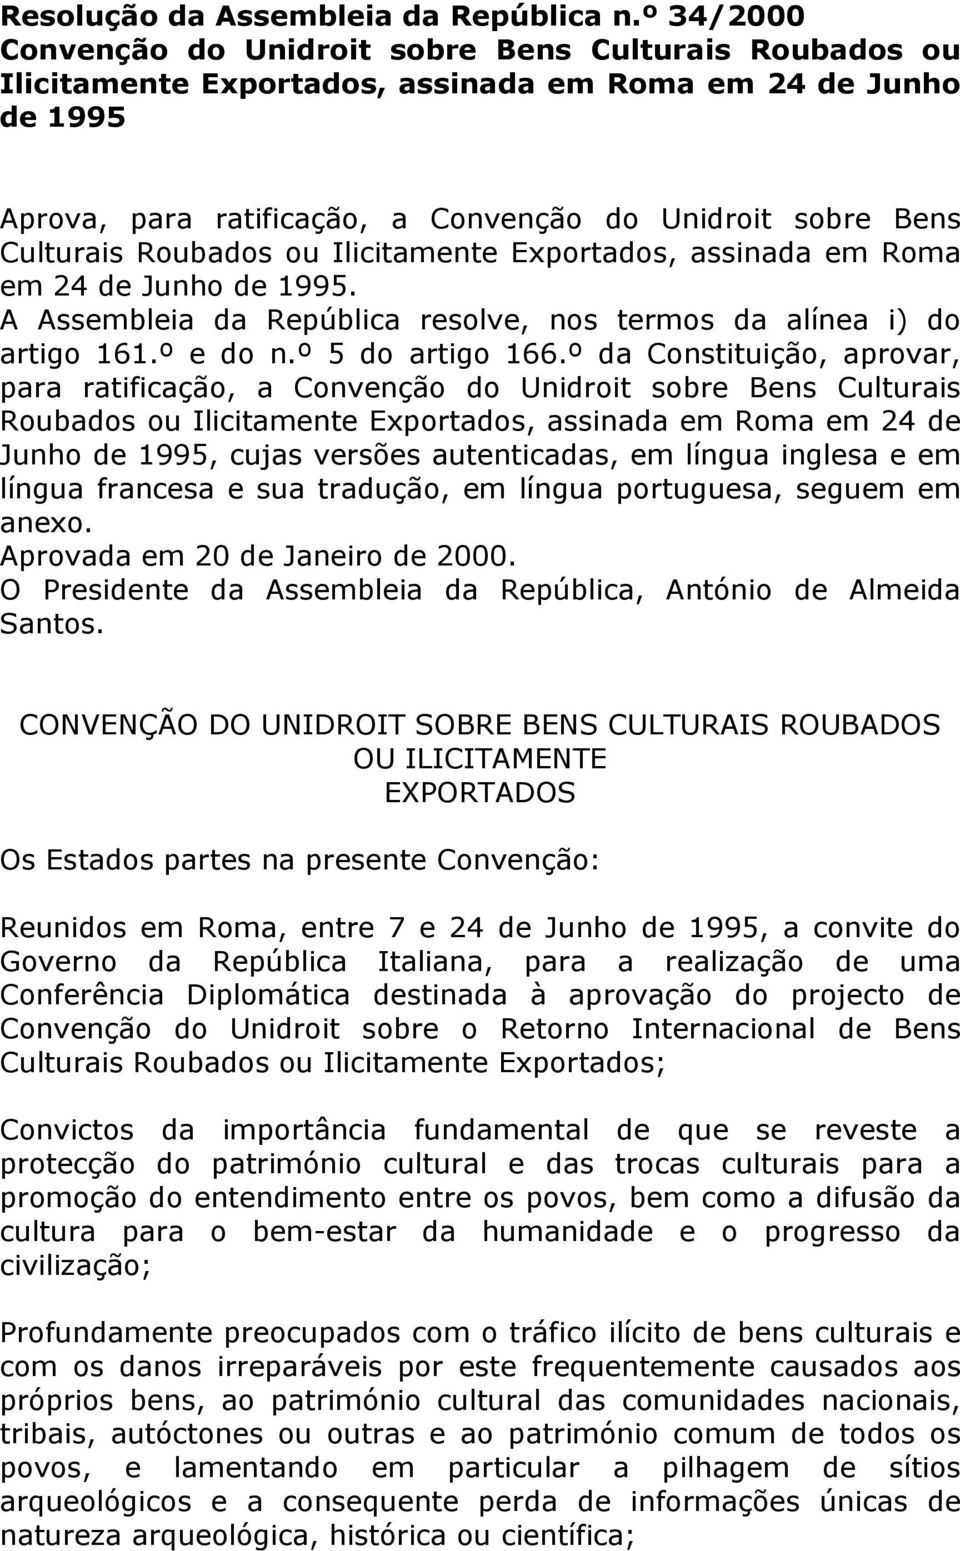 Culturais Roubados ou Ilicitamente Exportados, assinada em Roma em 24 de Junho de 1995. A Assembleia da República resolve, nos termos da alínea i) do artigo 161.º e do n.º 5 do artigo 166.